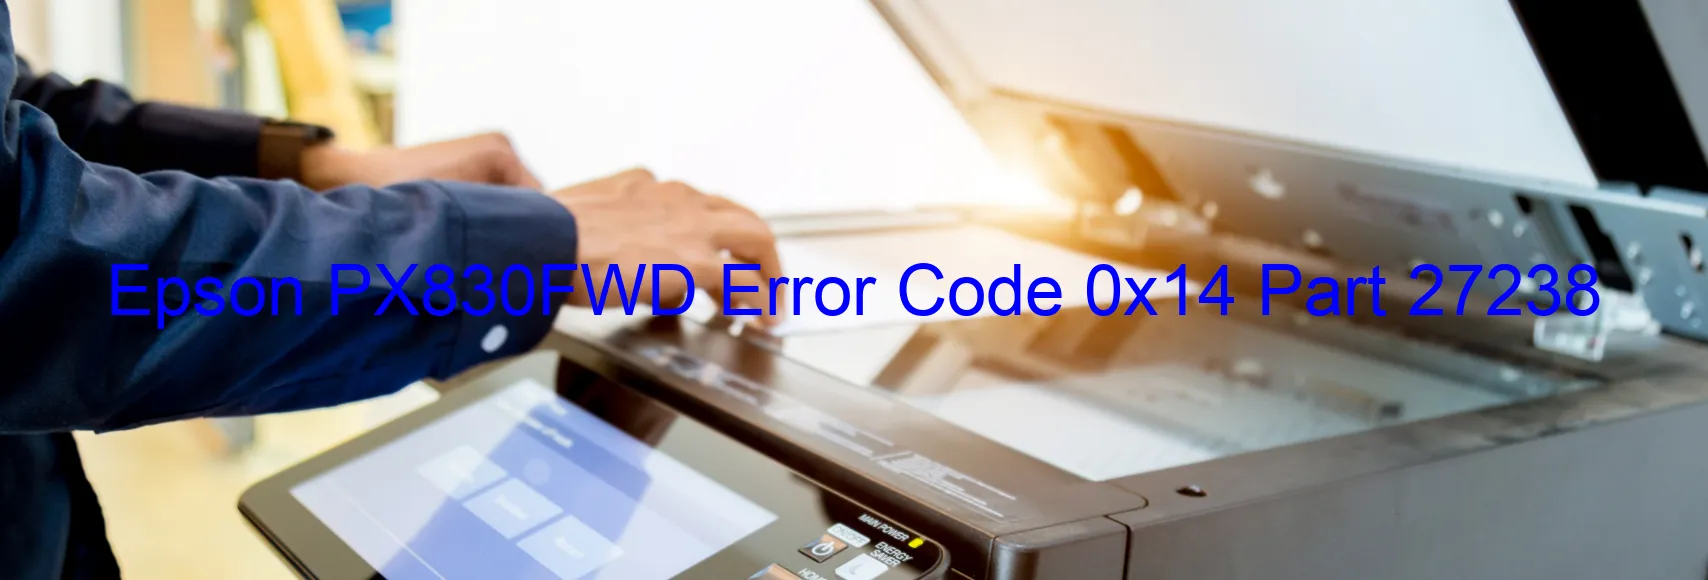 Epson PX830FWD Error Code 0x14 Part 27238